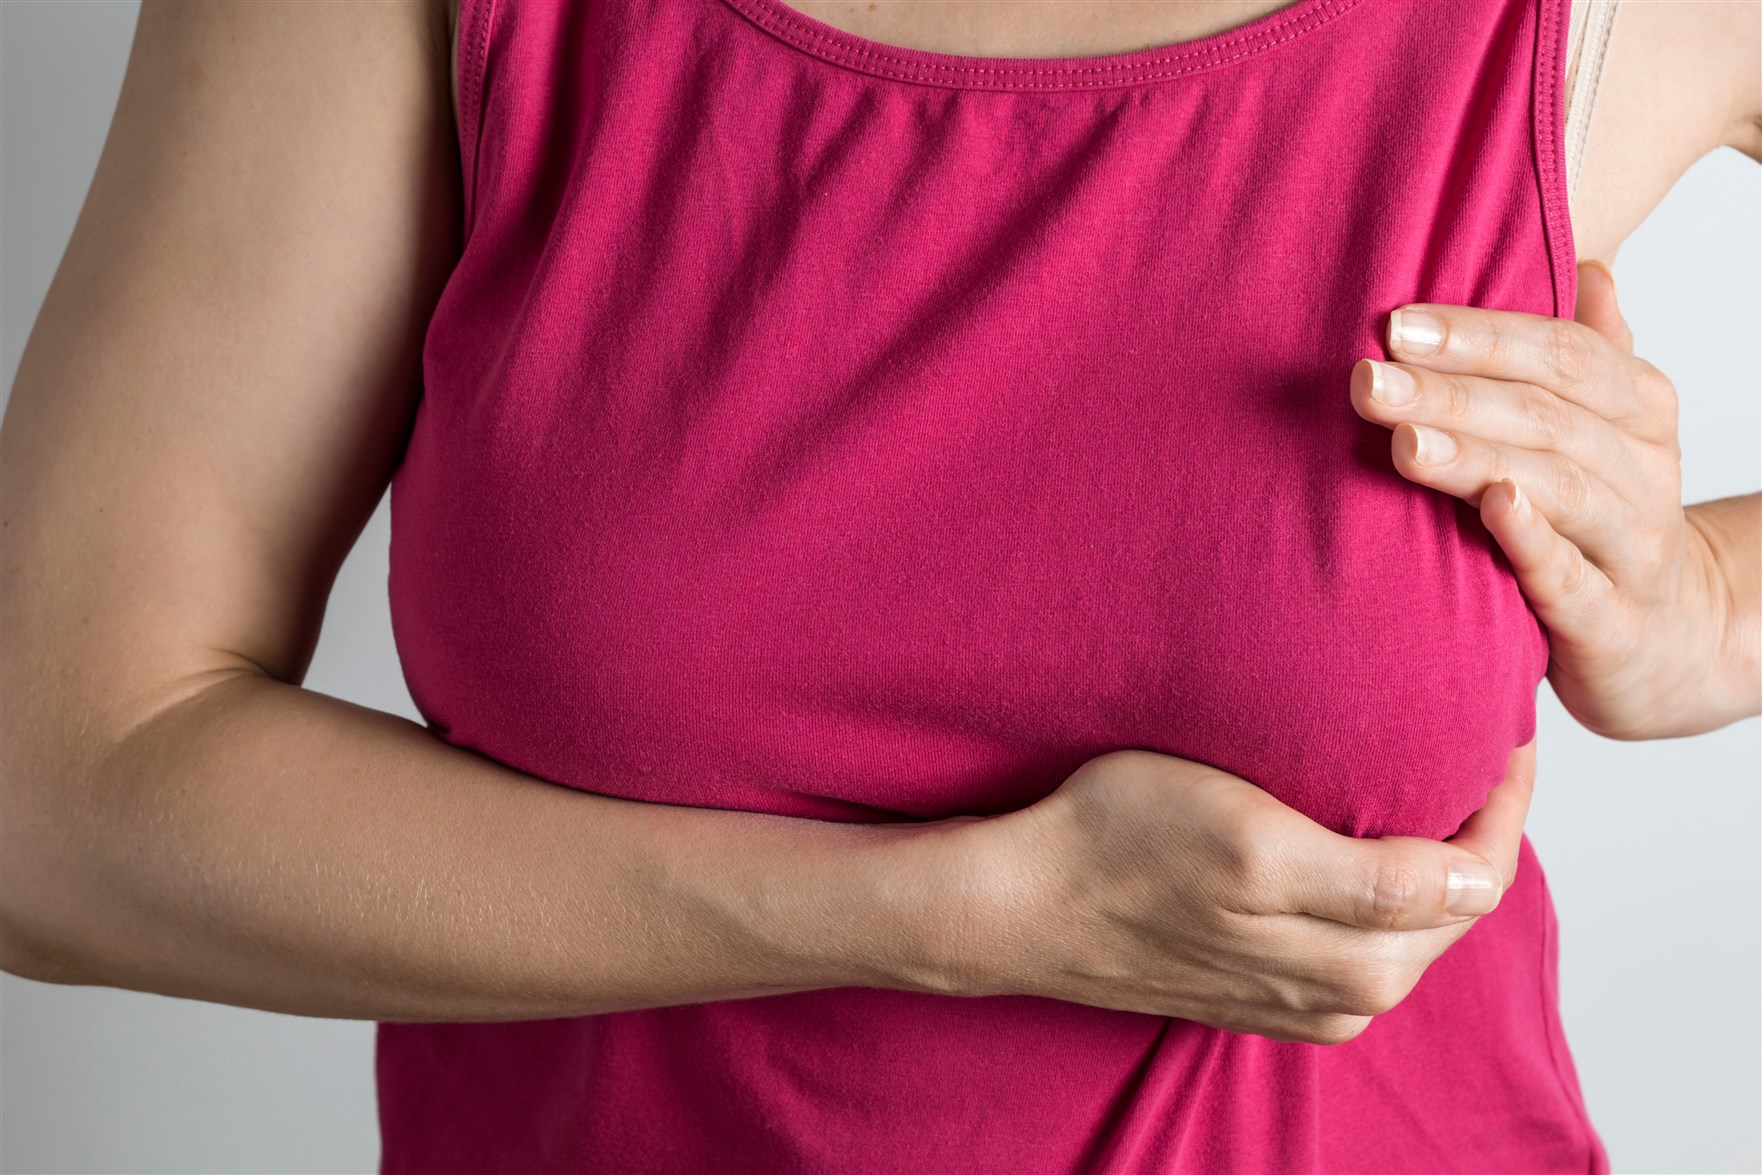 علاج اختلاف حجم الثديين في فترة الرضاعة